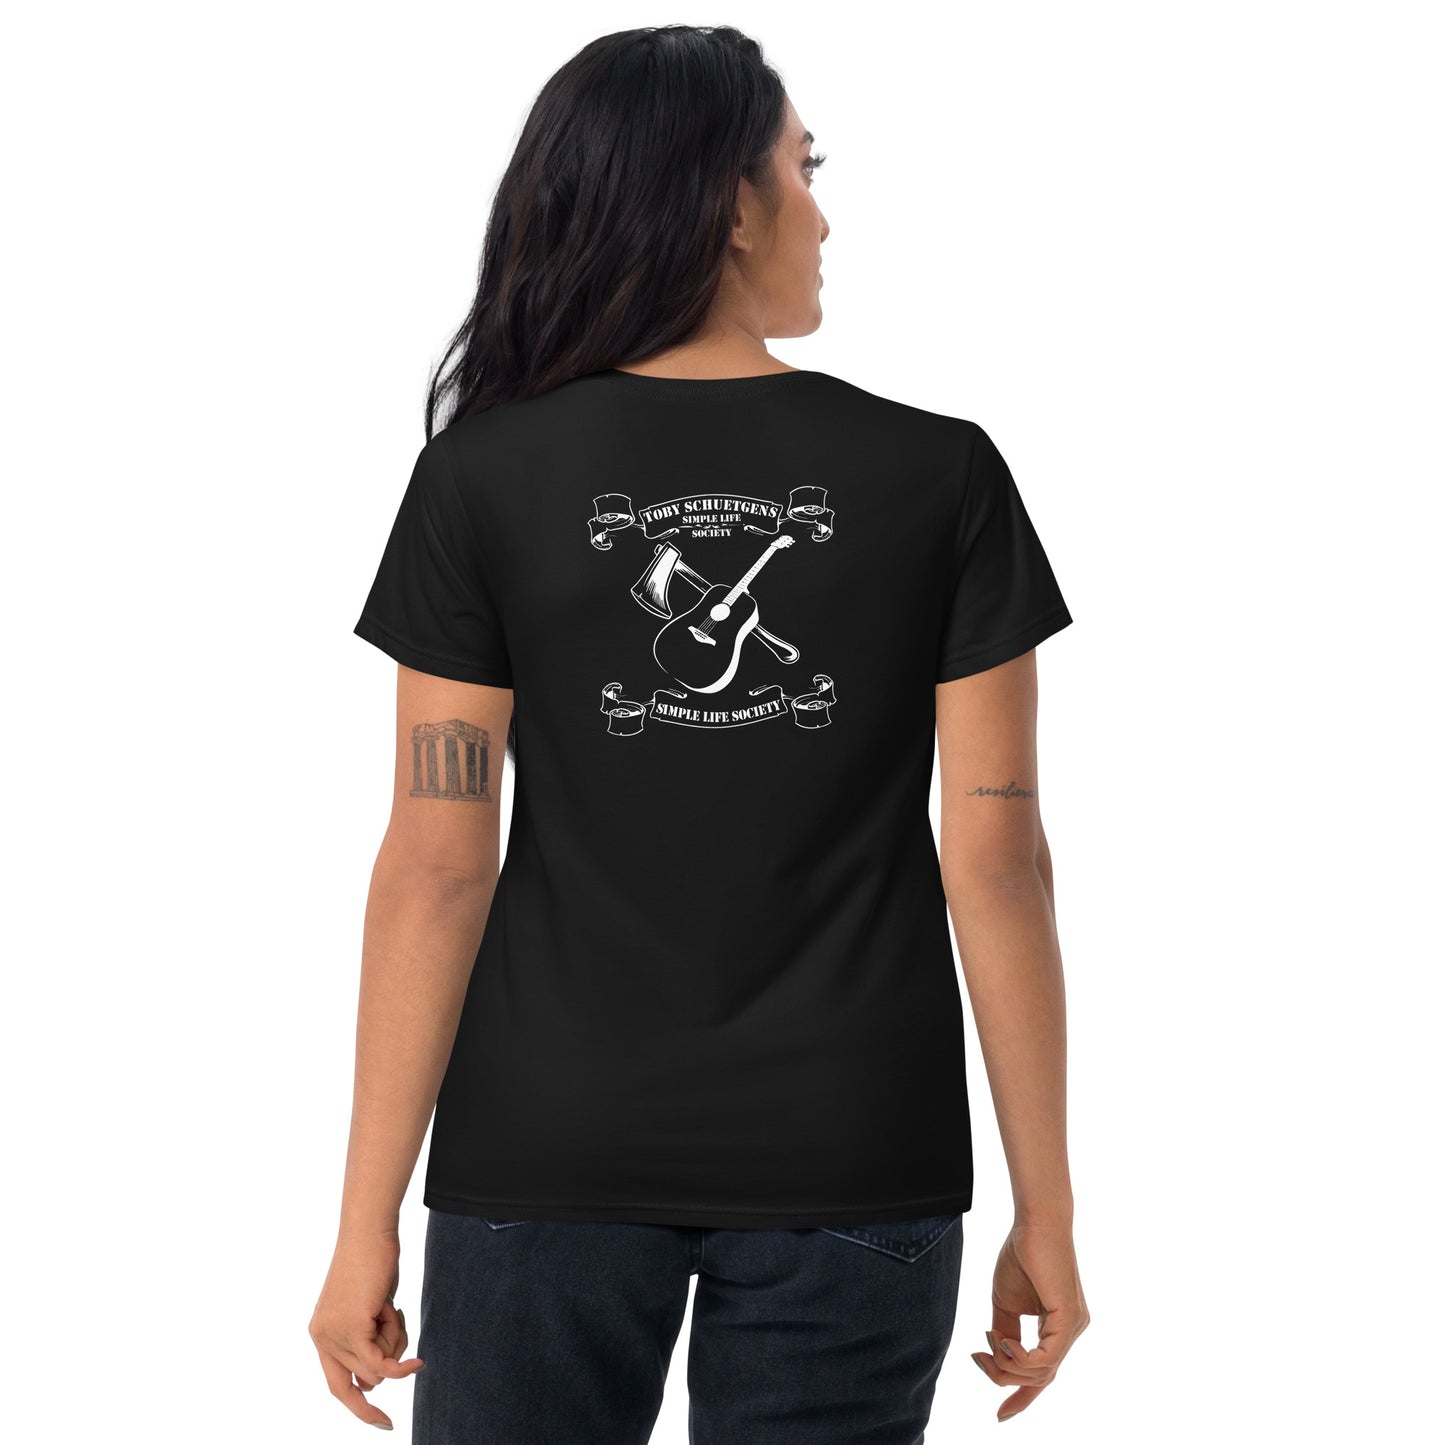 Women's short sleeve t-shirt "TS Simple Life Society"